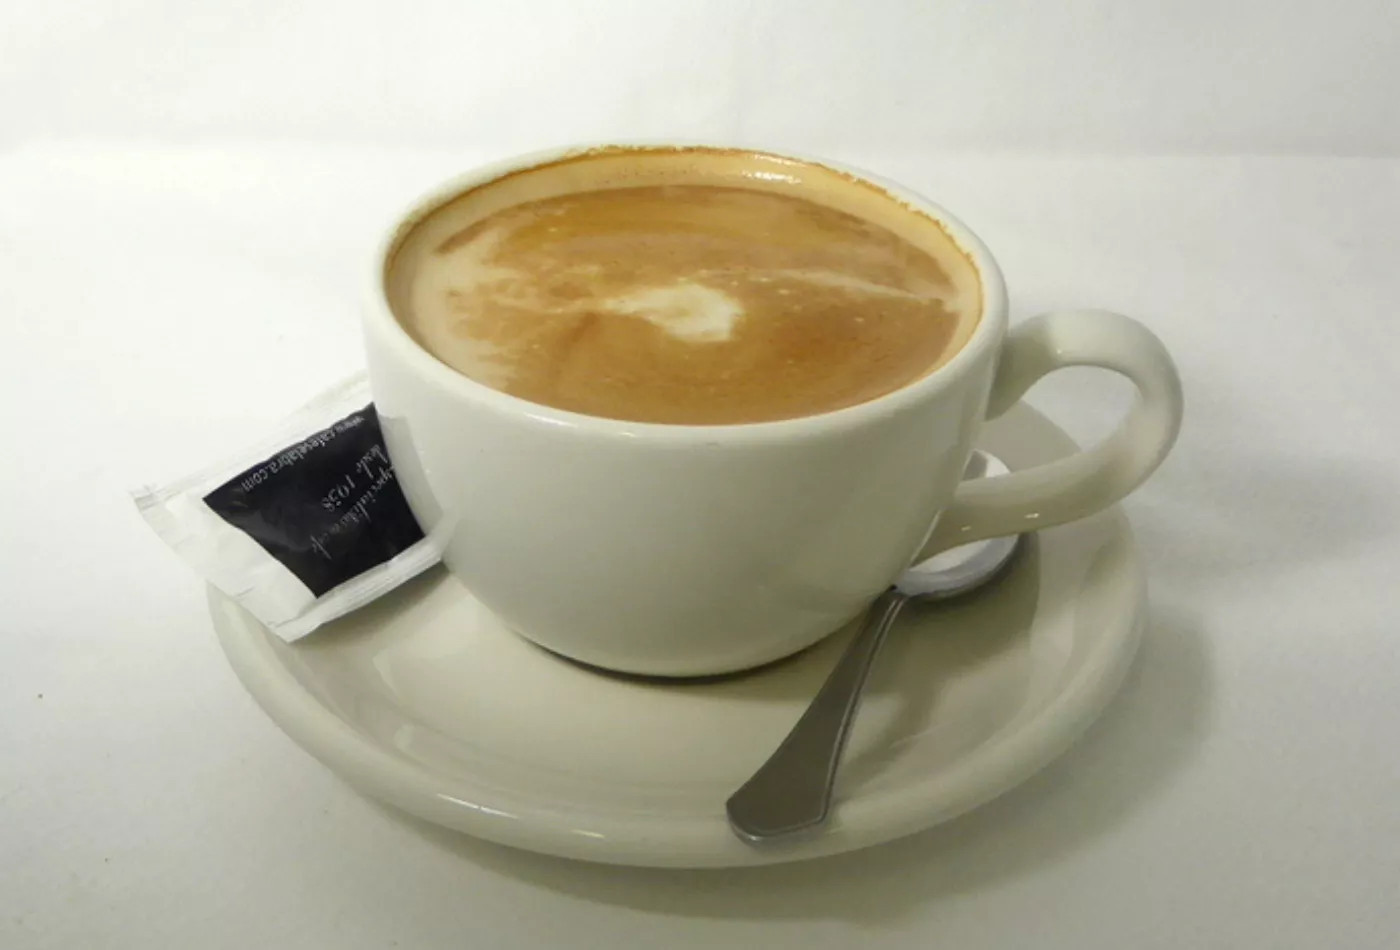 Una taza de café con leche en una imagen de archivo / ARCHIVO